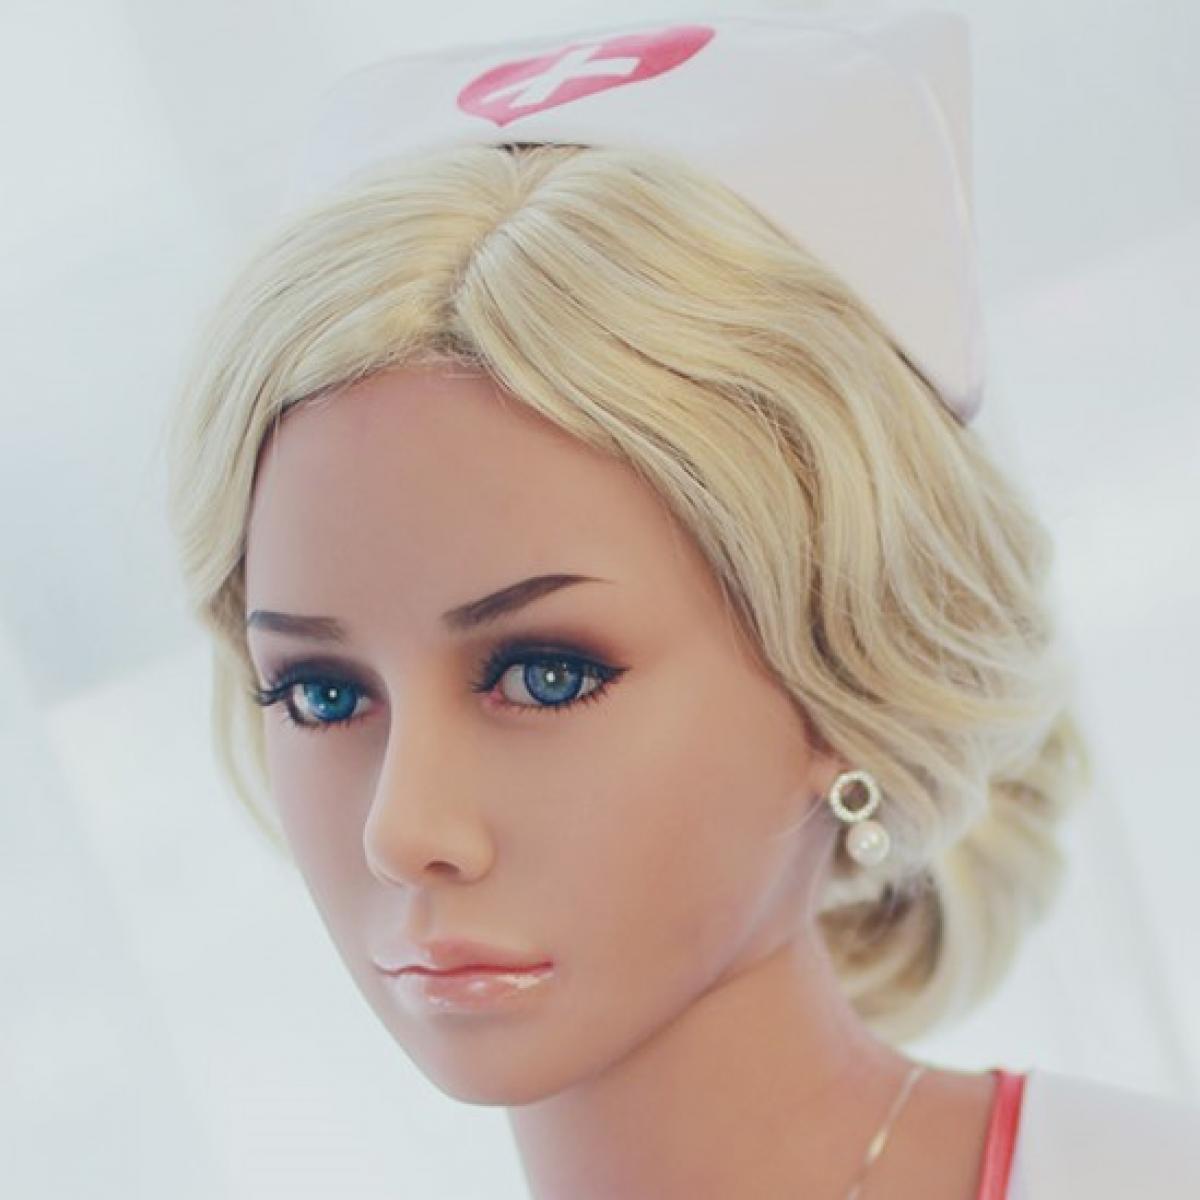 Neodoll Sugar babe - Kathryn Head - Sex Doll Head - M16 Compatible - Tan